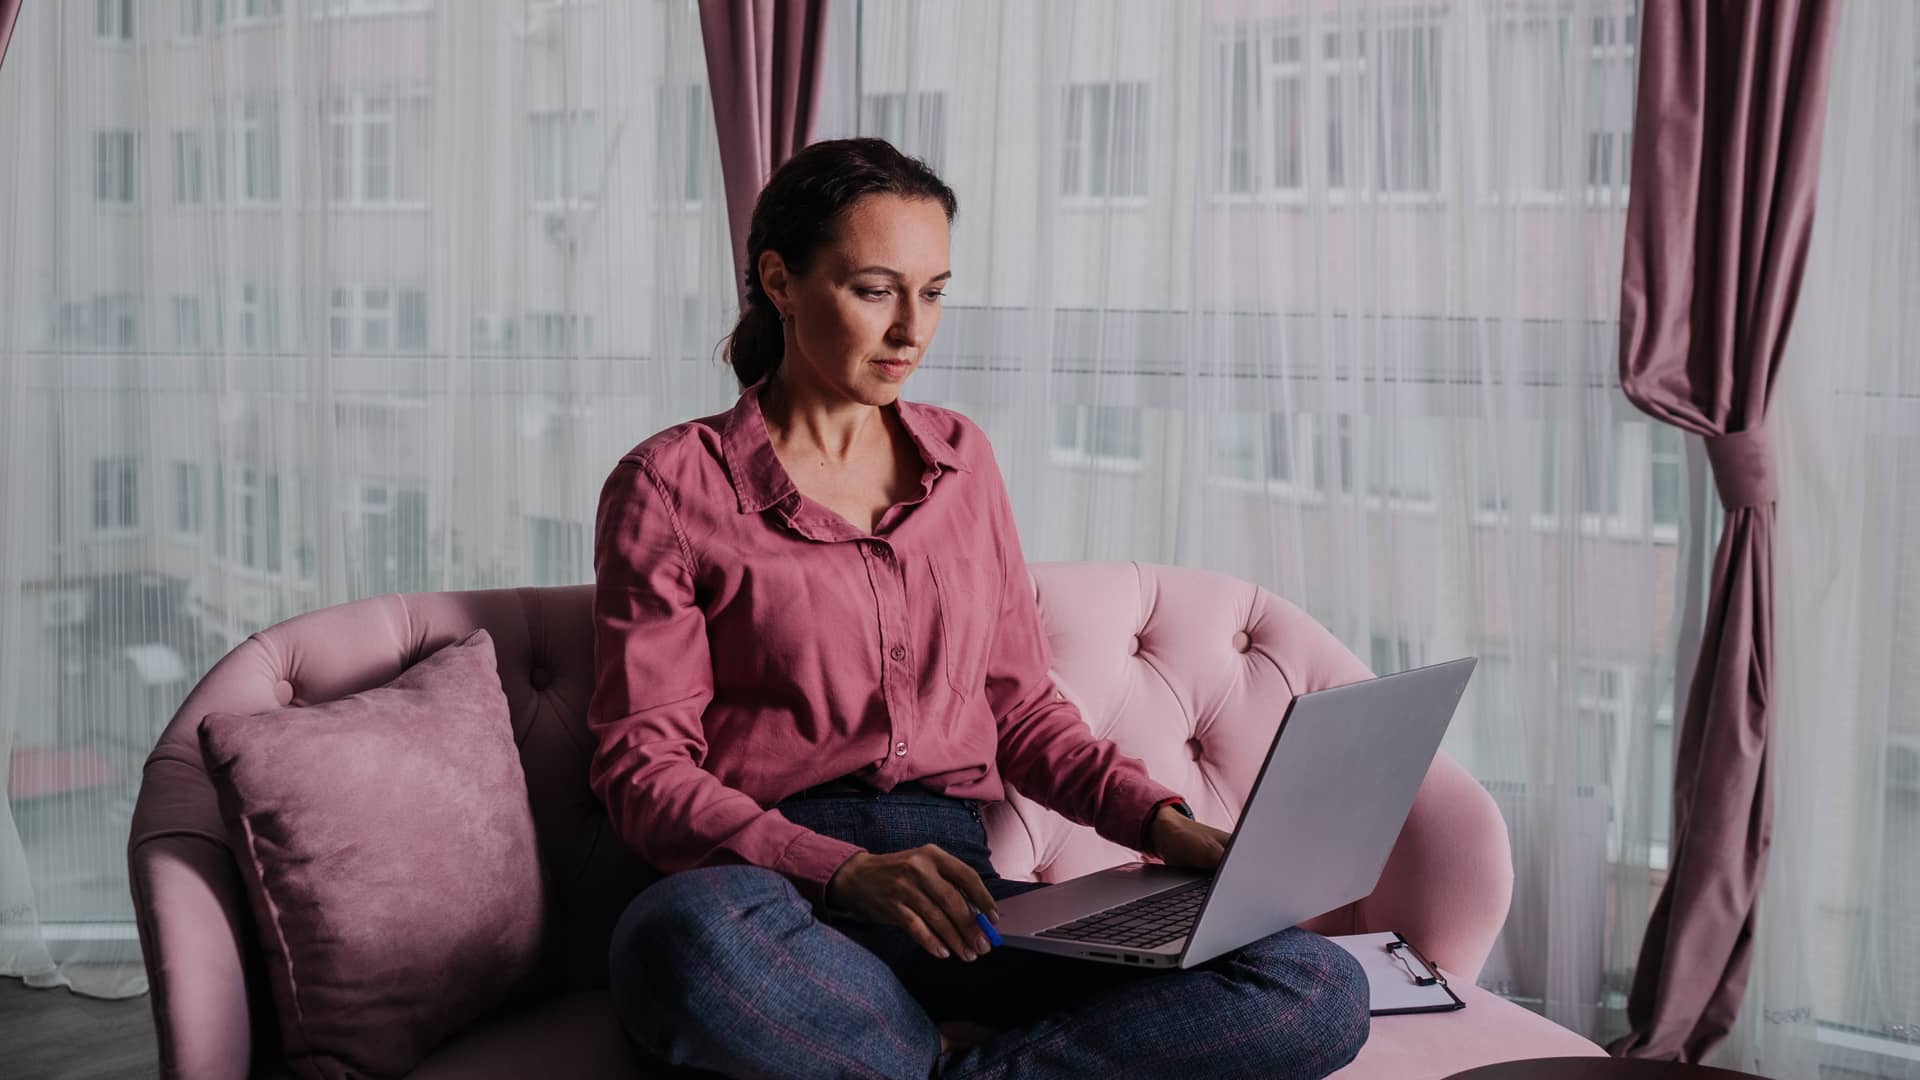 Mujer con camisa rosa navega por internet en su portatil gracias a su tarifa de oceans